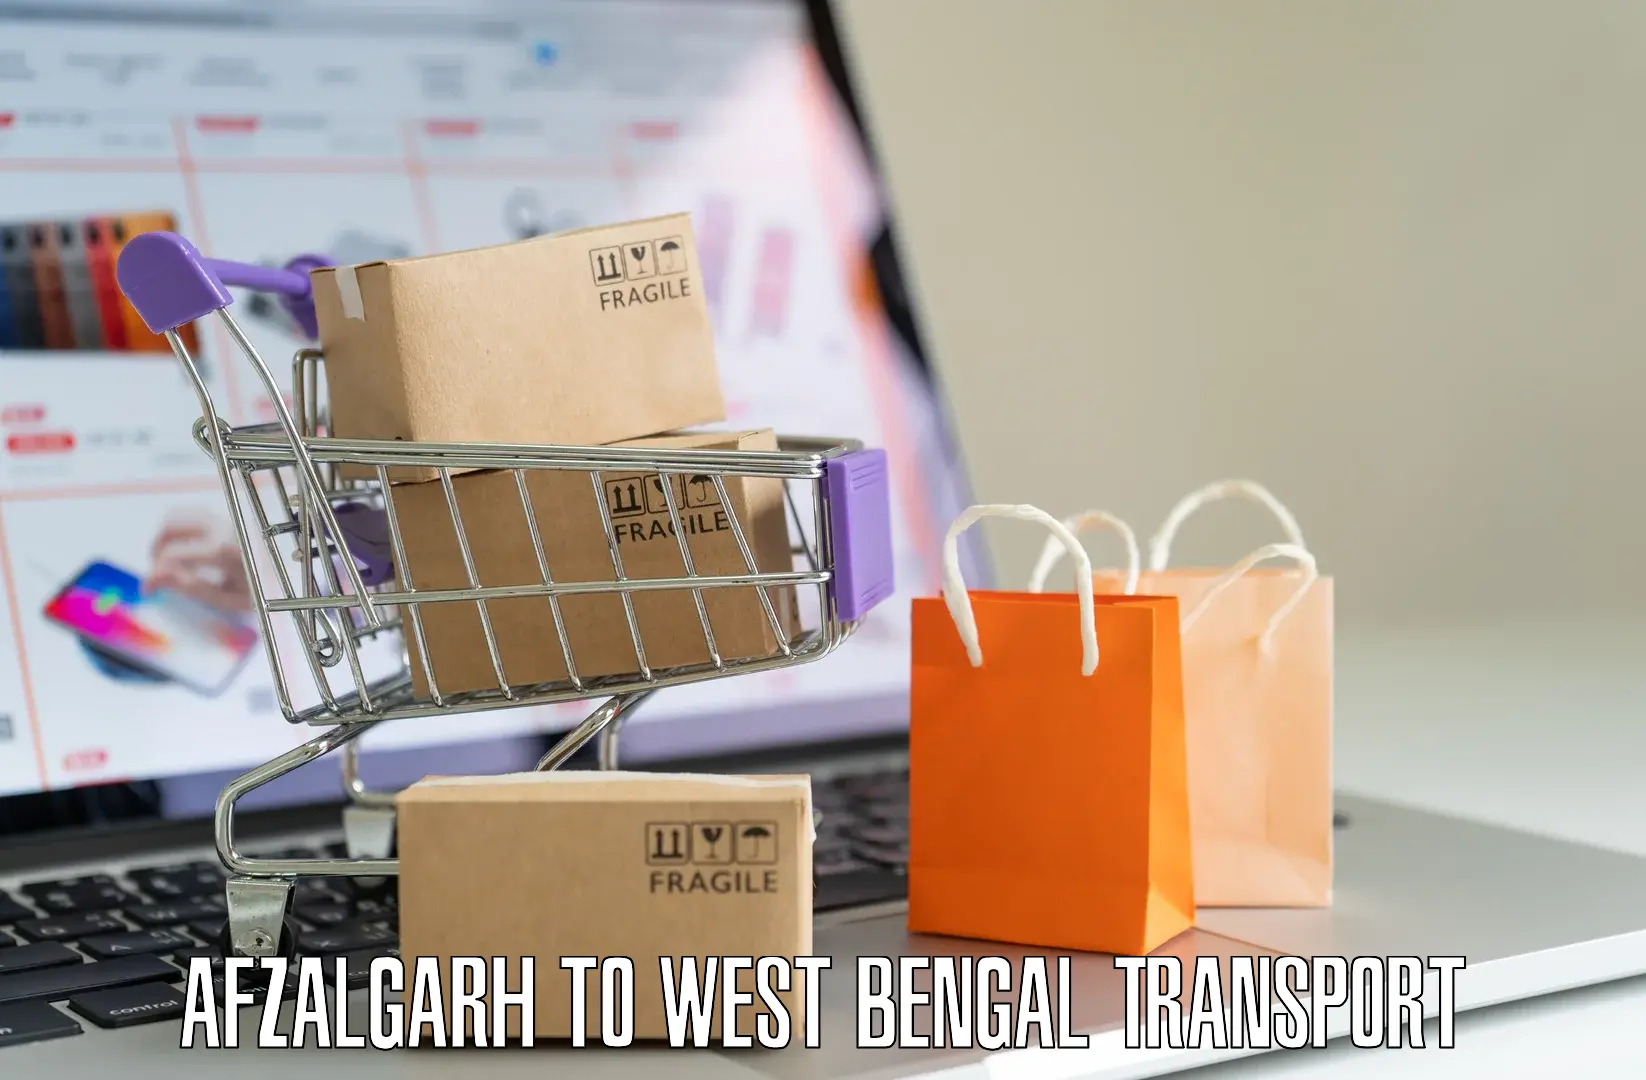 Shipping partner Afzalgarh to Titagarh